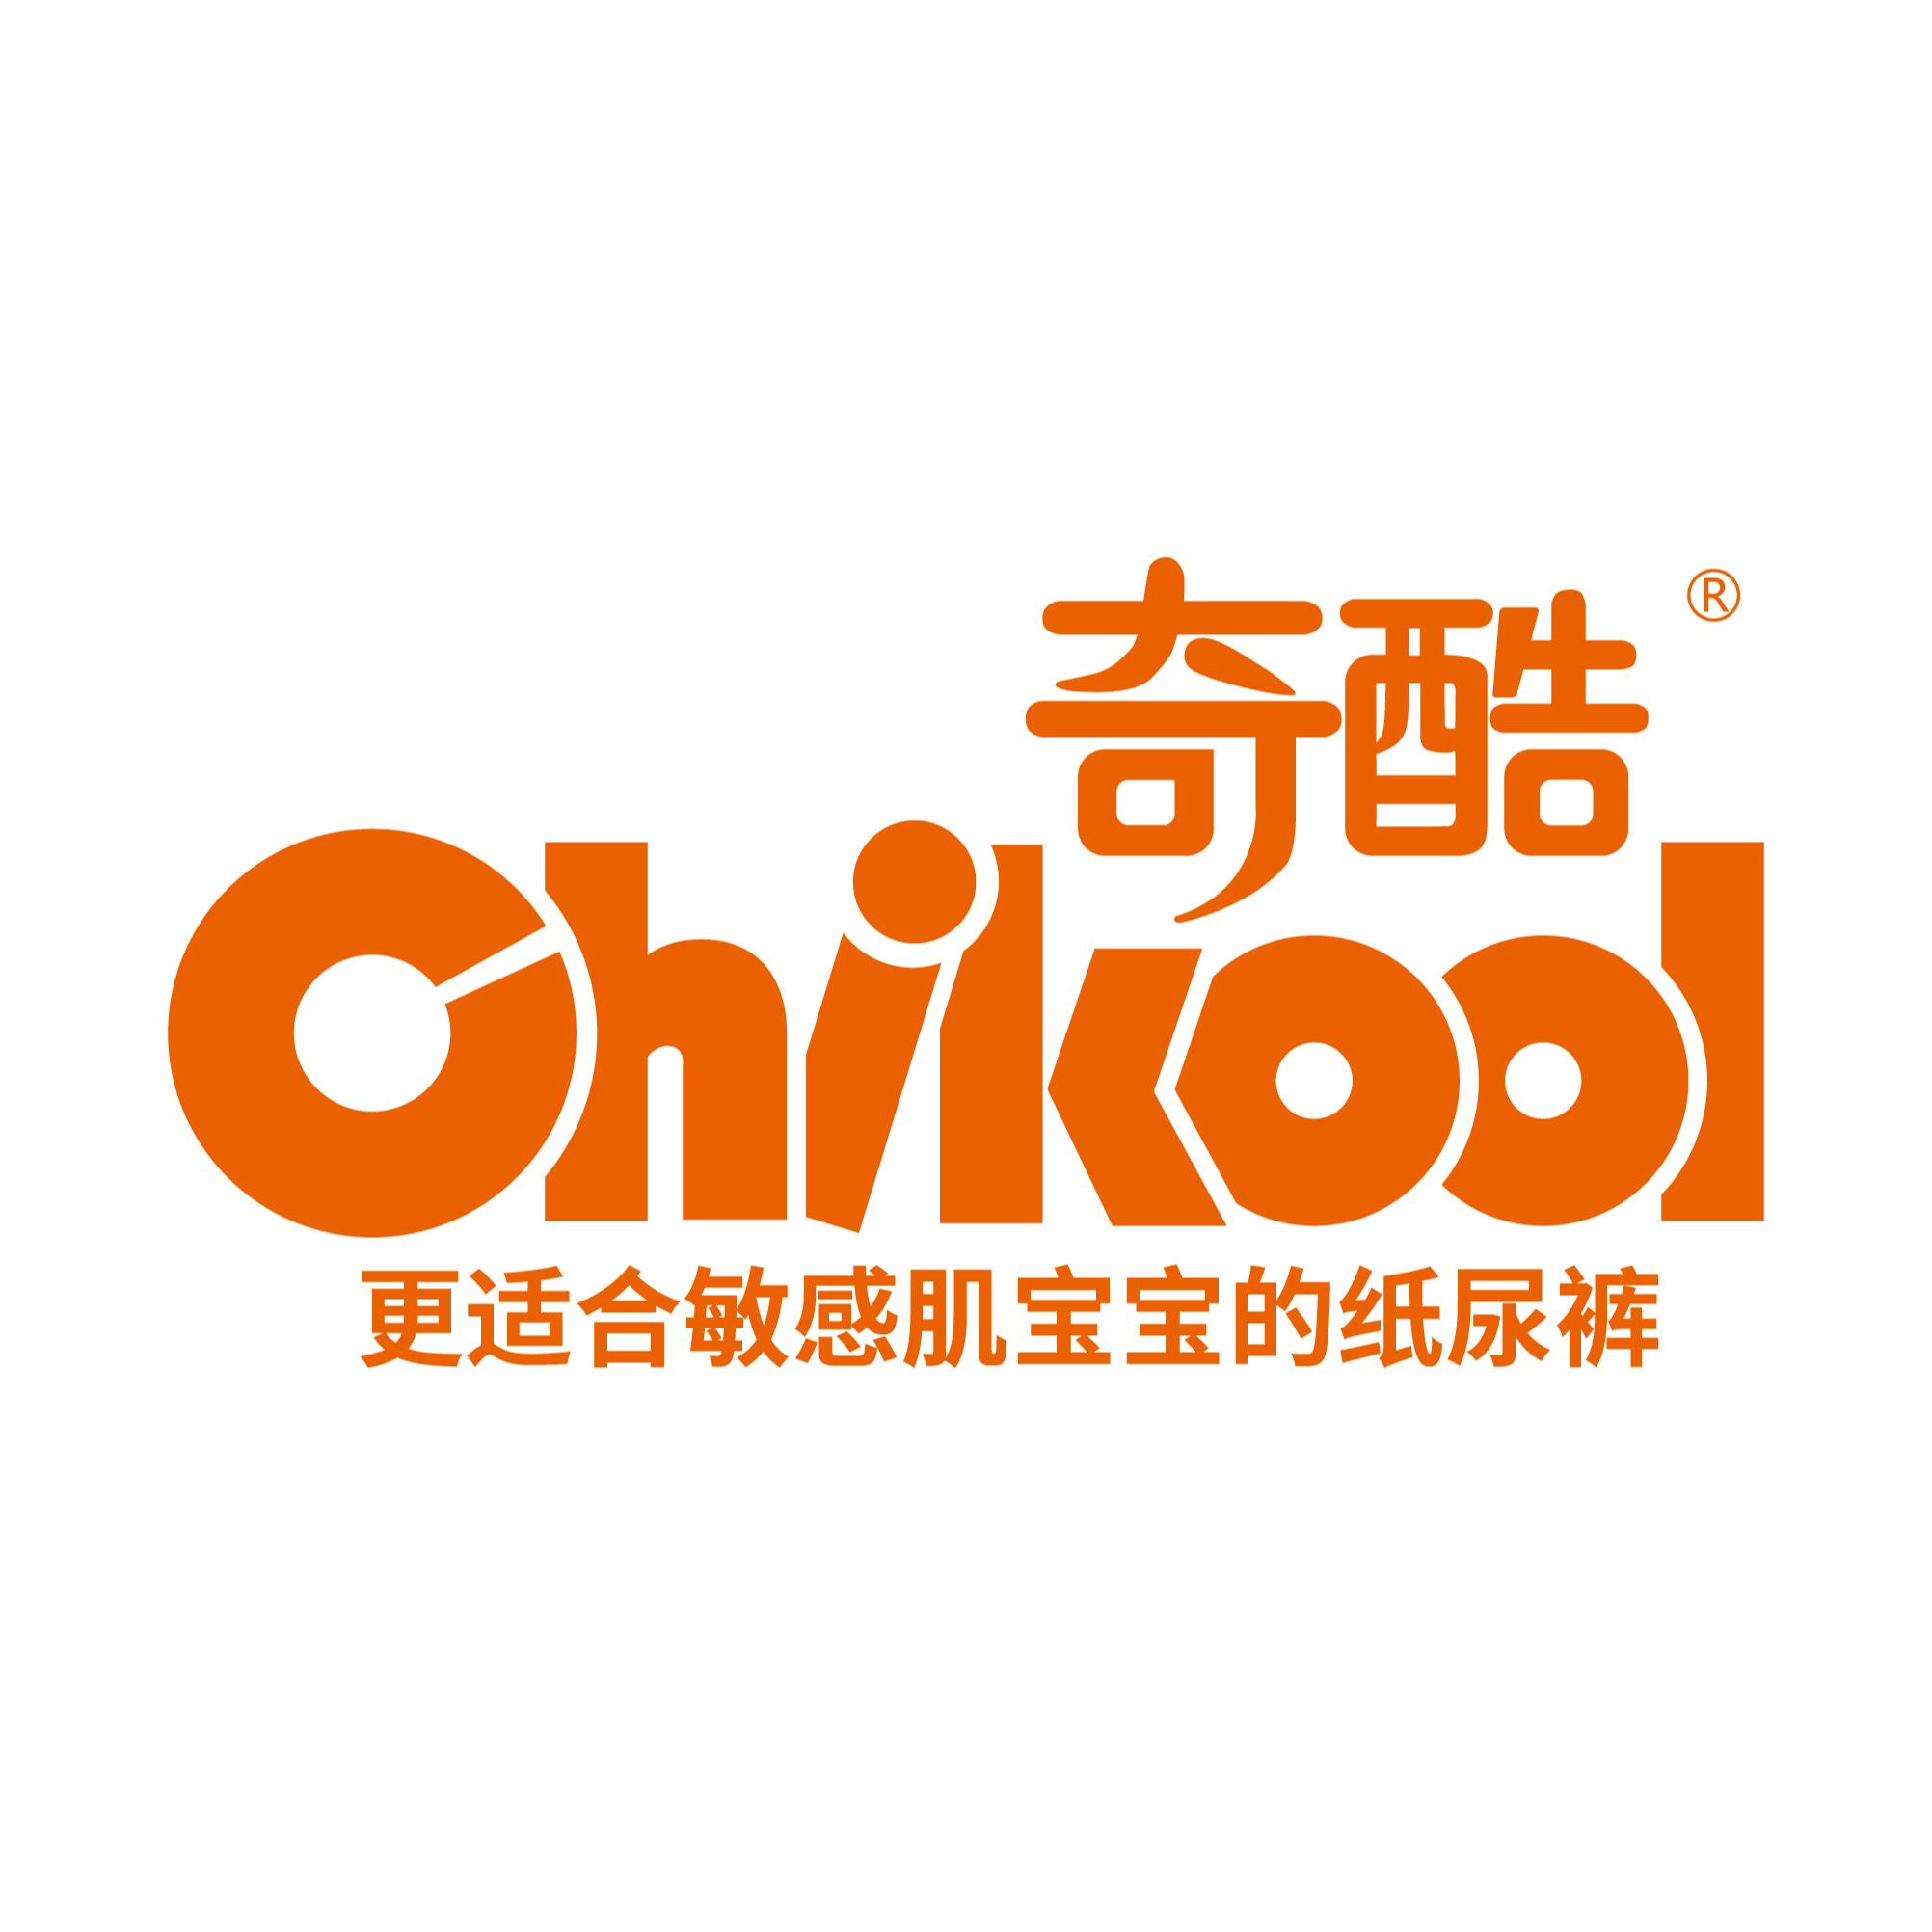 【奇酷Chikool】纸尿裤产品，实物赞助高端纸尿裤礼盒，寻求线上推广合作